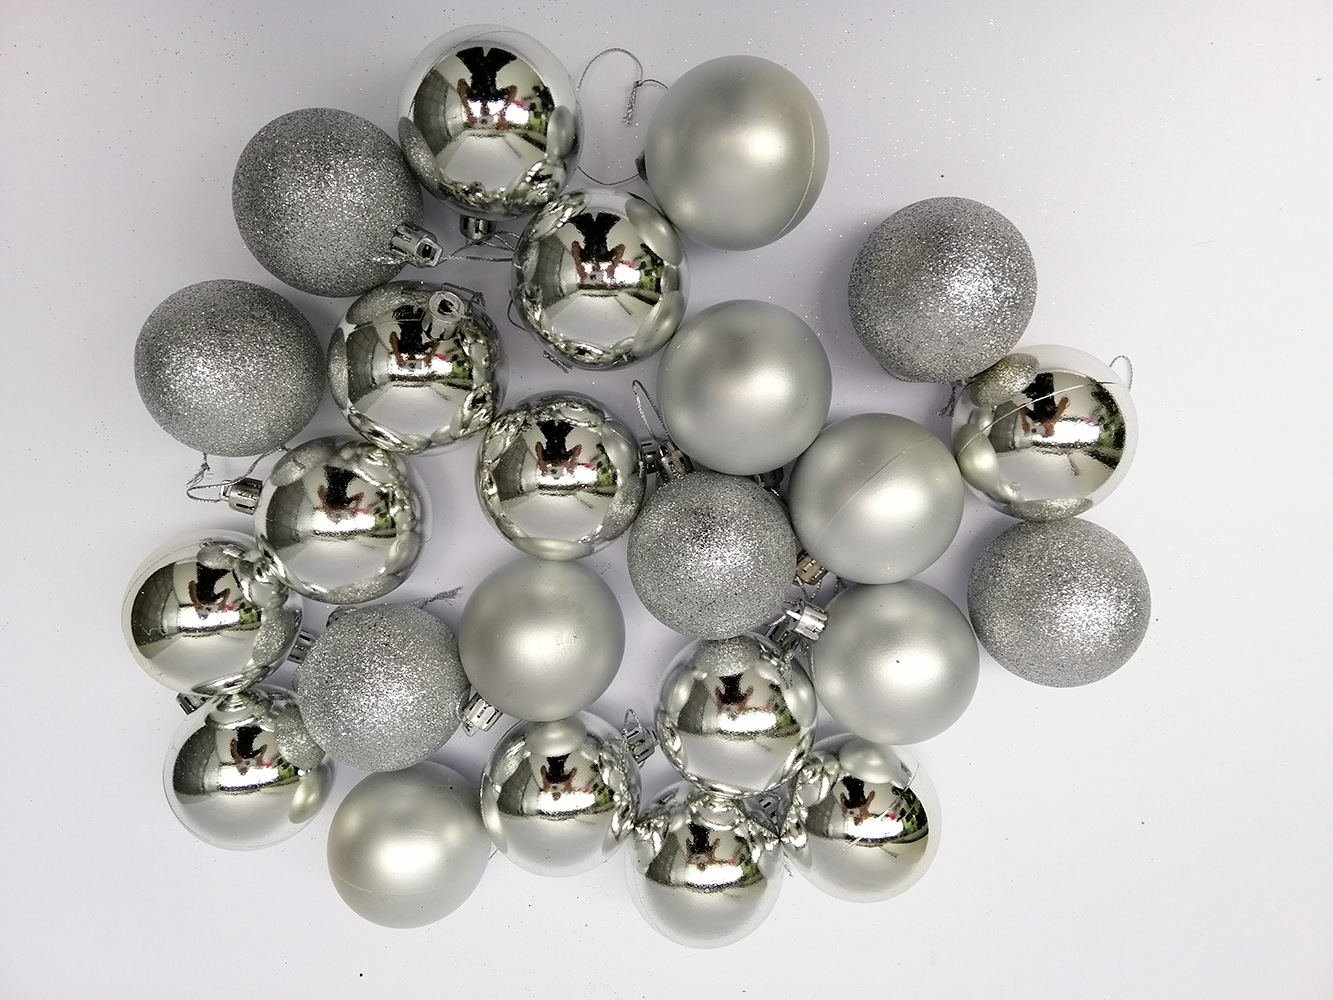 Hộp 24 quả châu (quả cầu) trang trí Noel - đường kính 6cm